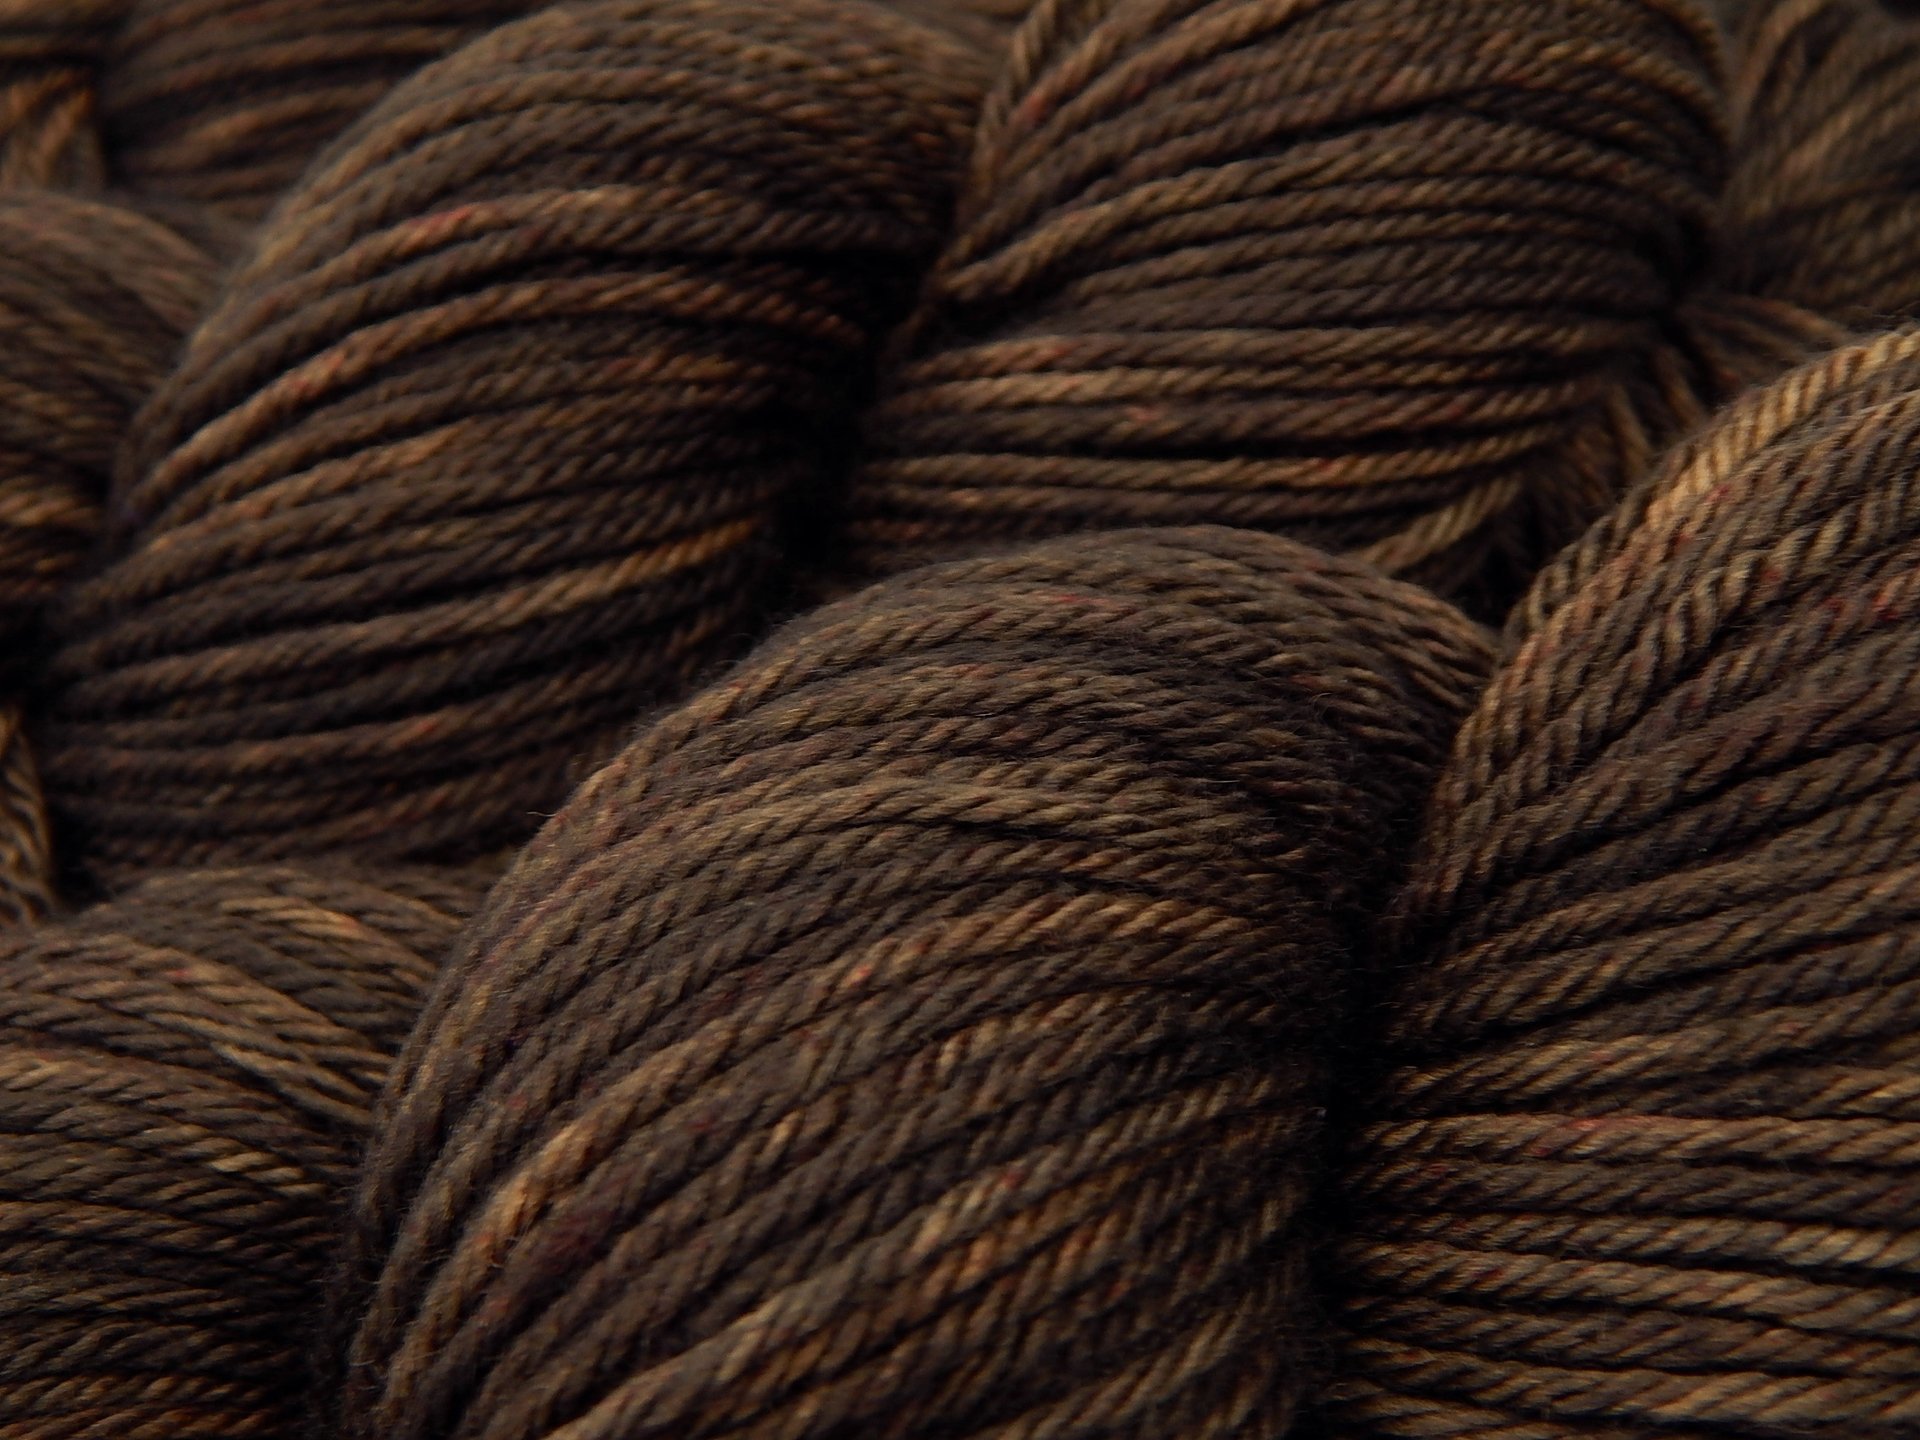 Hand Dyed Yarn, Worsted Weight Superwash Merino Wool - Bark Tonal - Dark Brown Chocolate Indie Dyer Knitting Yarn, Crochet Craft DIY Supply